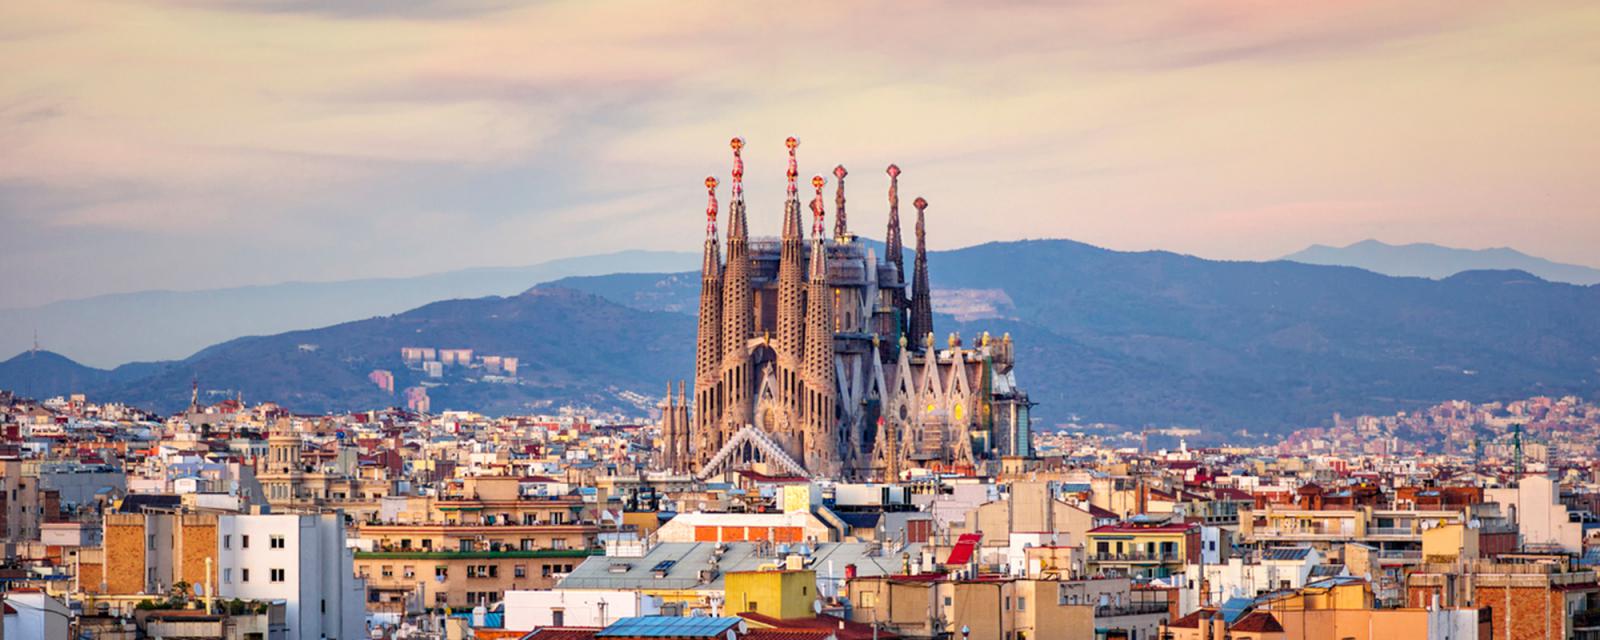 Gezapt: Barcelona | Inspiratie voor jouw stedentrip 